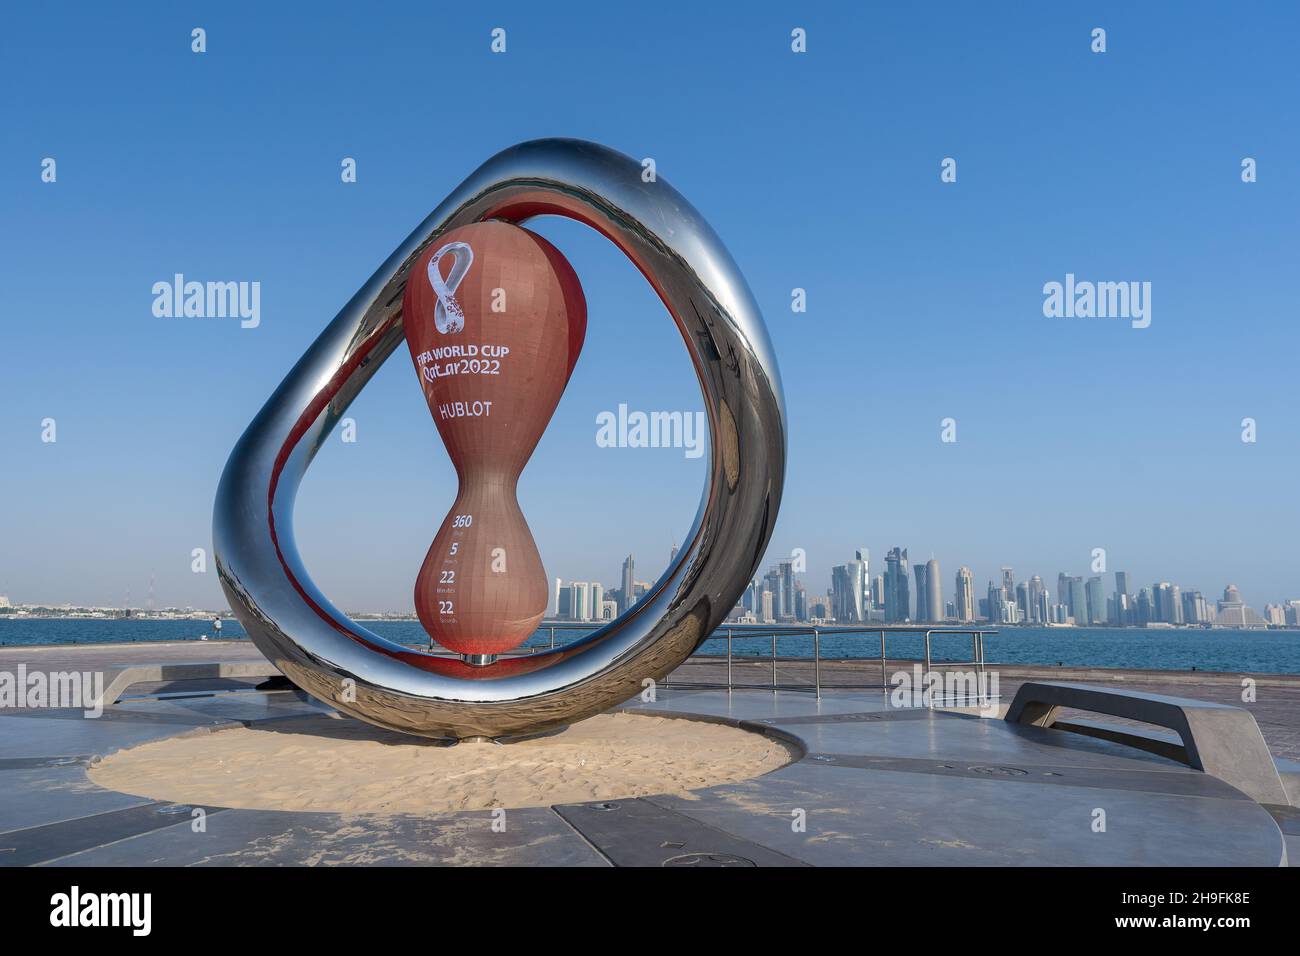 DOHA, KATAR - 26. NOV 2021: Die offizielle Countdown-Uhr der FIFA  Fußball-Weltmeisterschaft Katar 2022, powered by Hublot auf der Doha  corniche Stockfotografie - Alamy